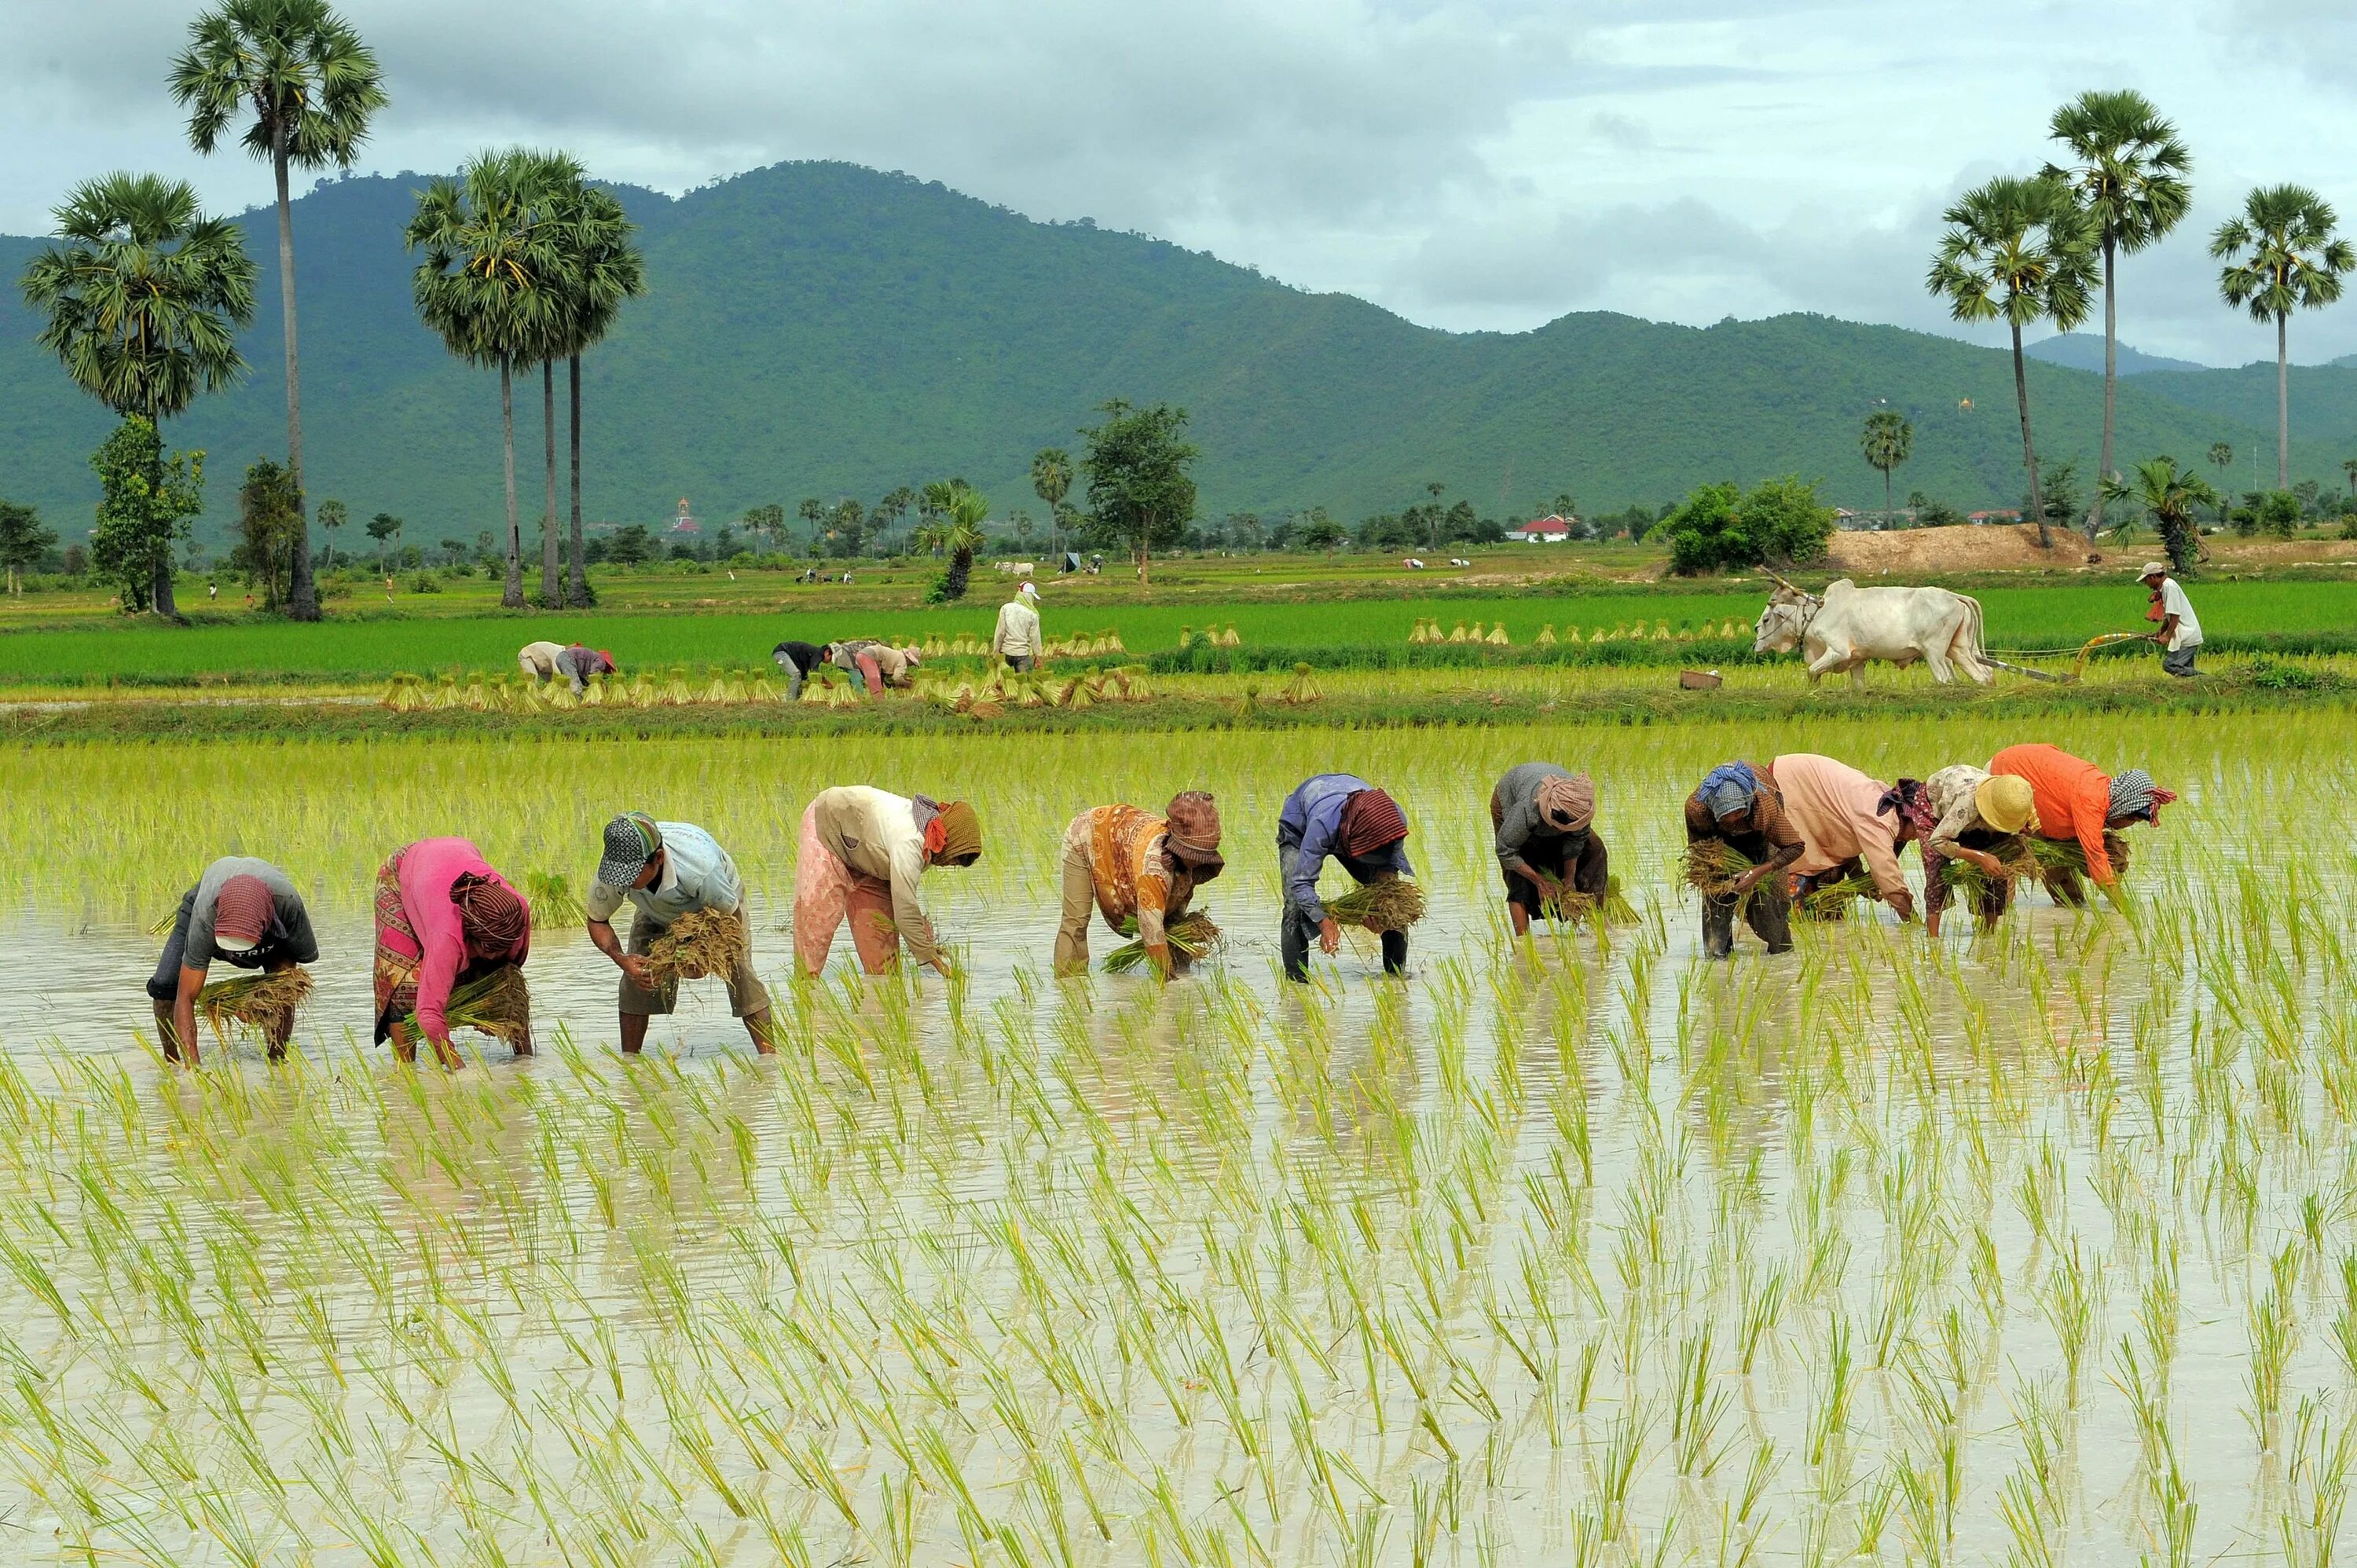 Сх китайски. Камбоджия рисовые поля. Сельское хозяйство Камбоджи. Камбоджа ферма кхмерка. Лаос сельское хозяйство.